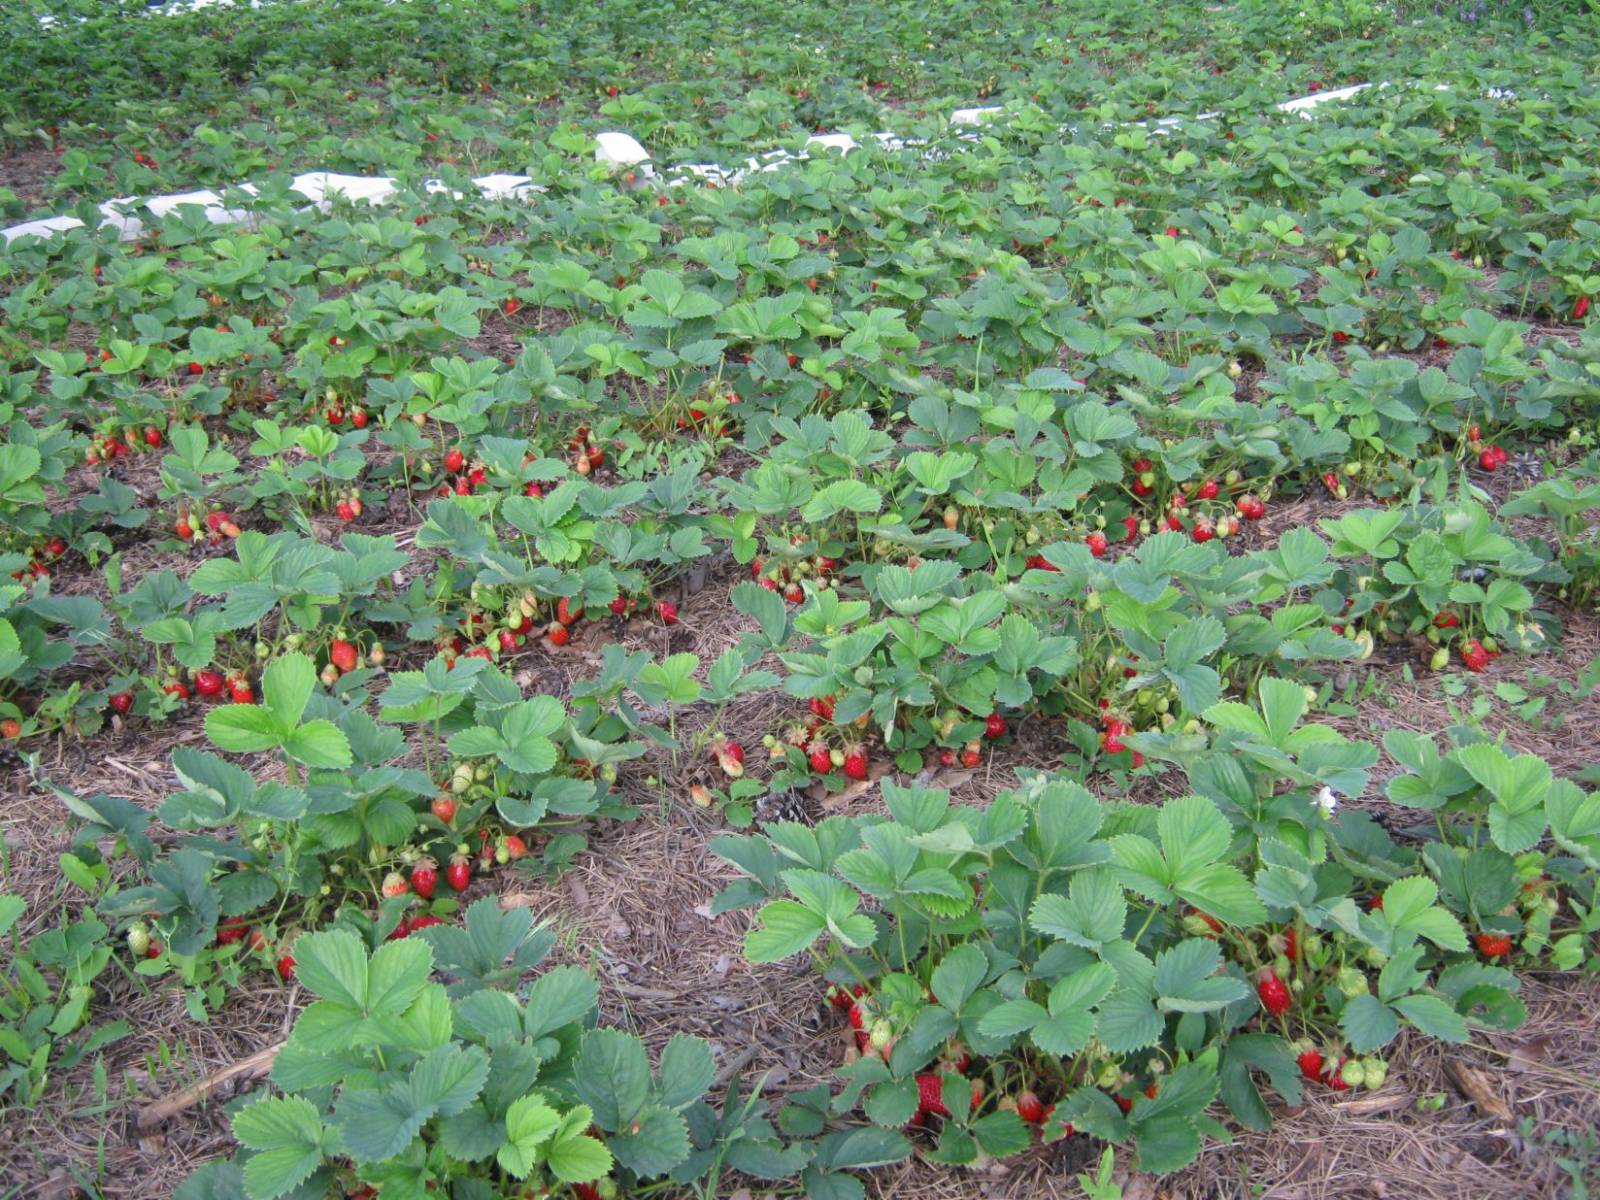 Выращивание клубники в открытом грунте, в том числе в беларуси, сибири, на урале и в других регионах